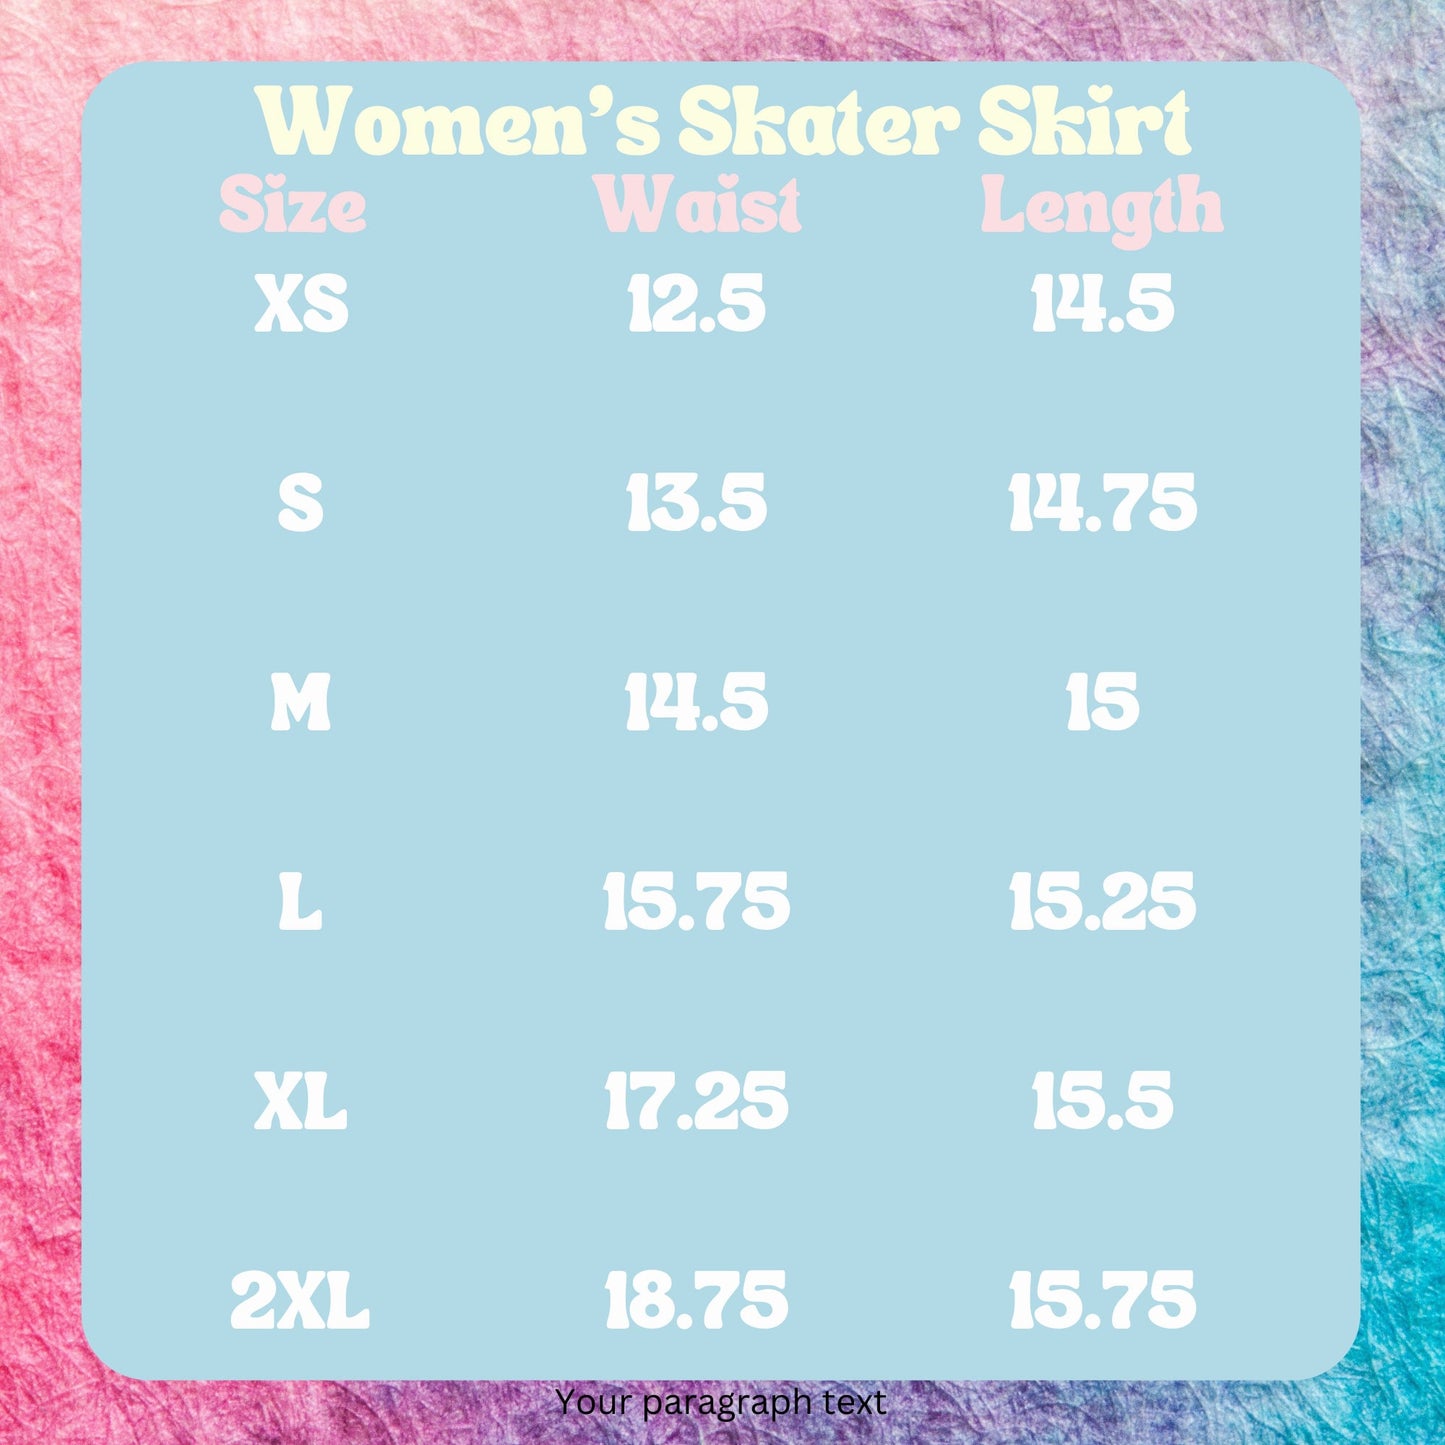 IPA Phonetic Alphabet Women's Skater Skirt